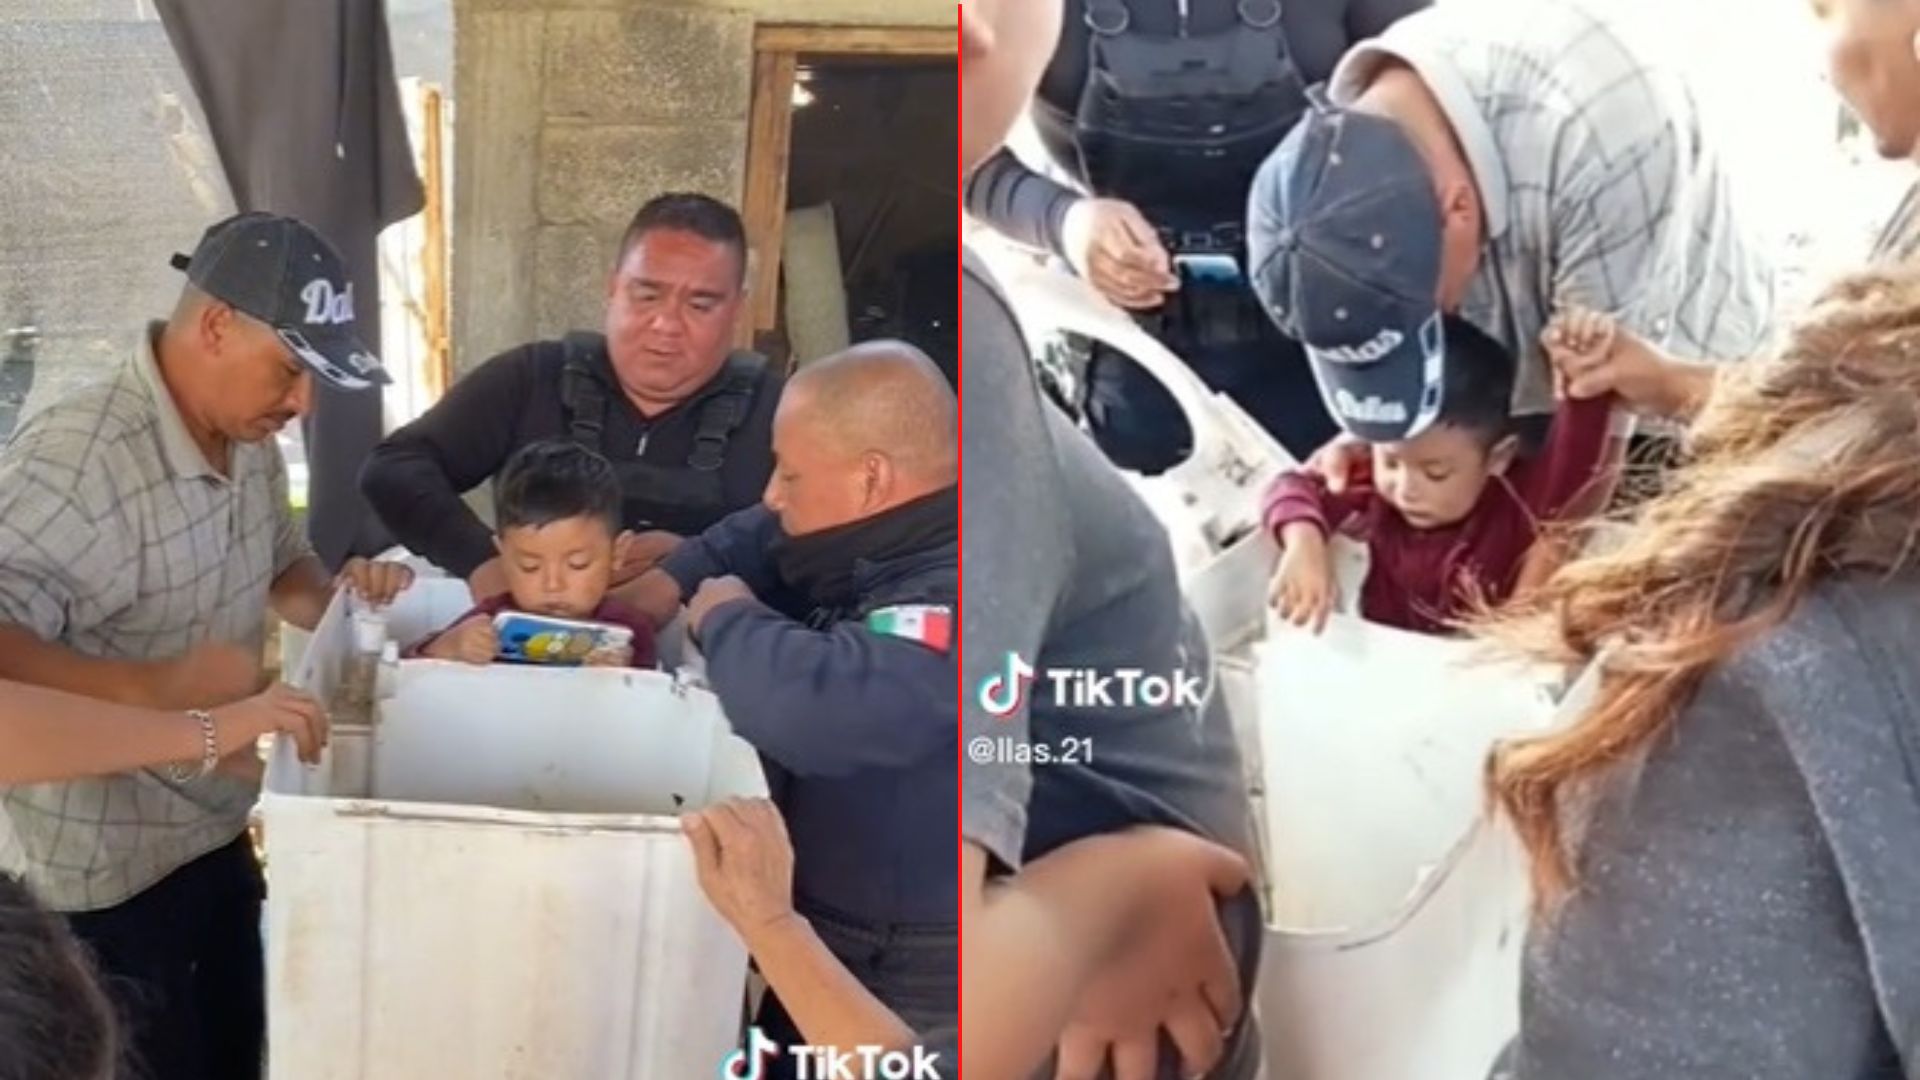 [VÍDEO] Niño se atora en una lavadora y se hace viral